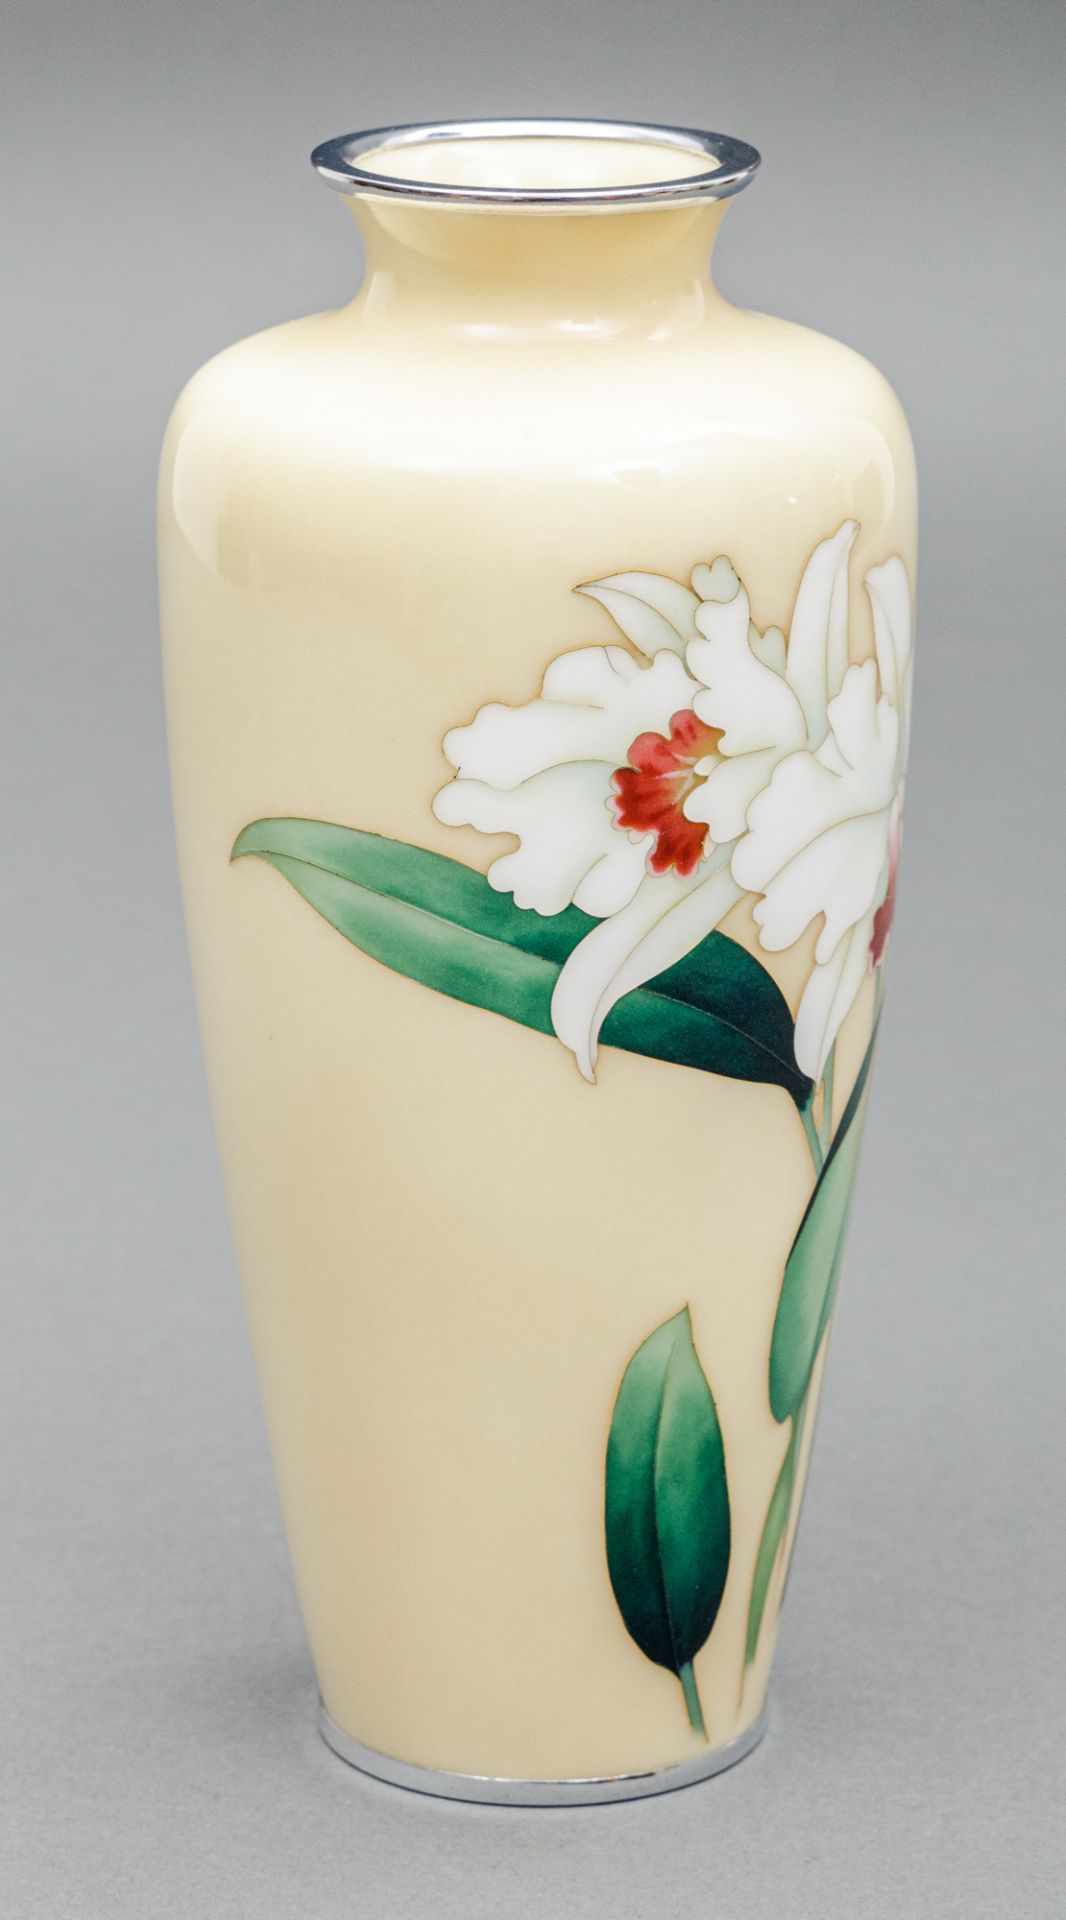 Cloisonné Vase, Japan, Ando Cloissoné Company (aktiv 1880-heute), Anfang 20 Jh. - Bild 4 aus 5